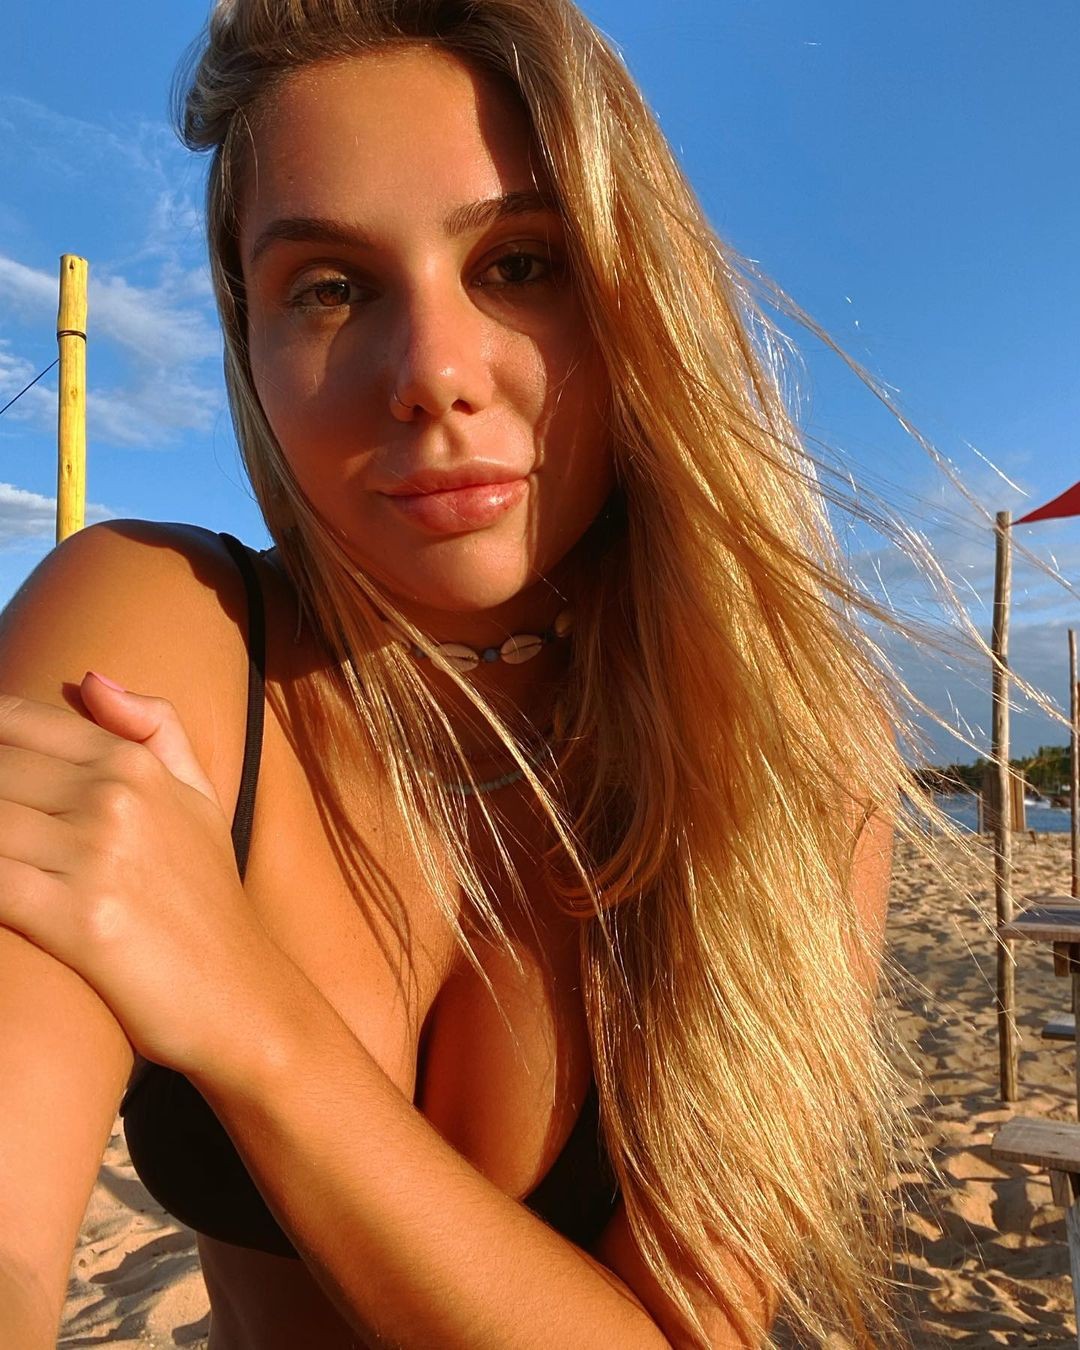 Carolina Portaluppi posta fotos na praia (Foto: Reprodução/ Instagram)